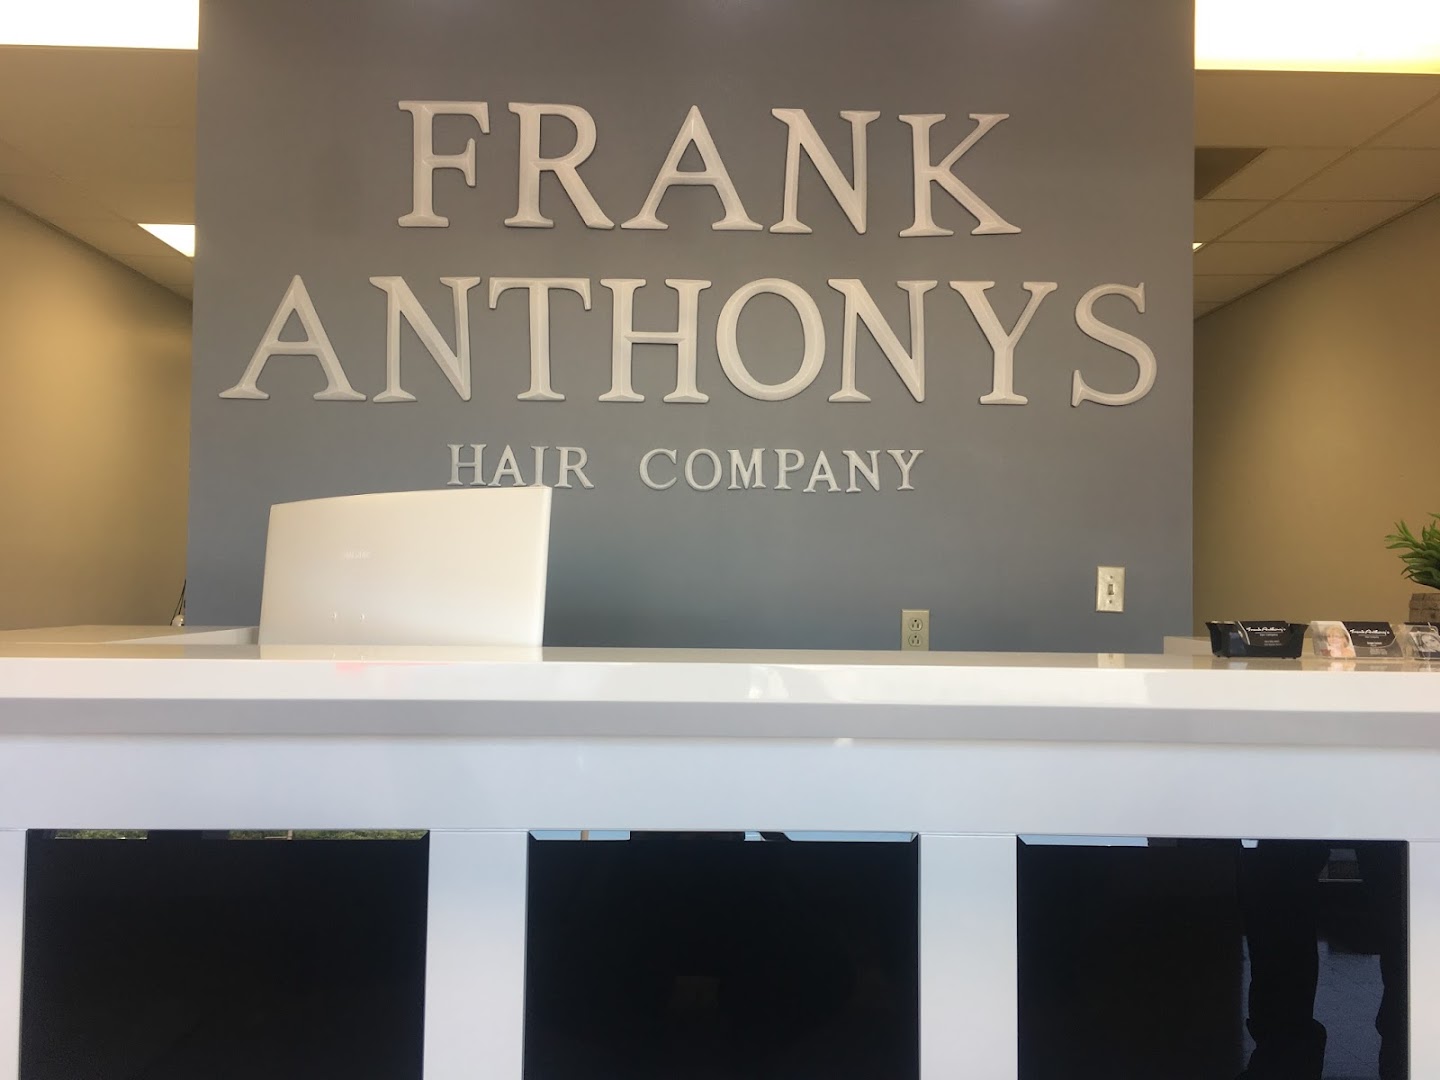 Frank Anthony's Hair Company